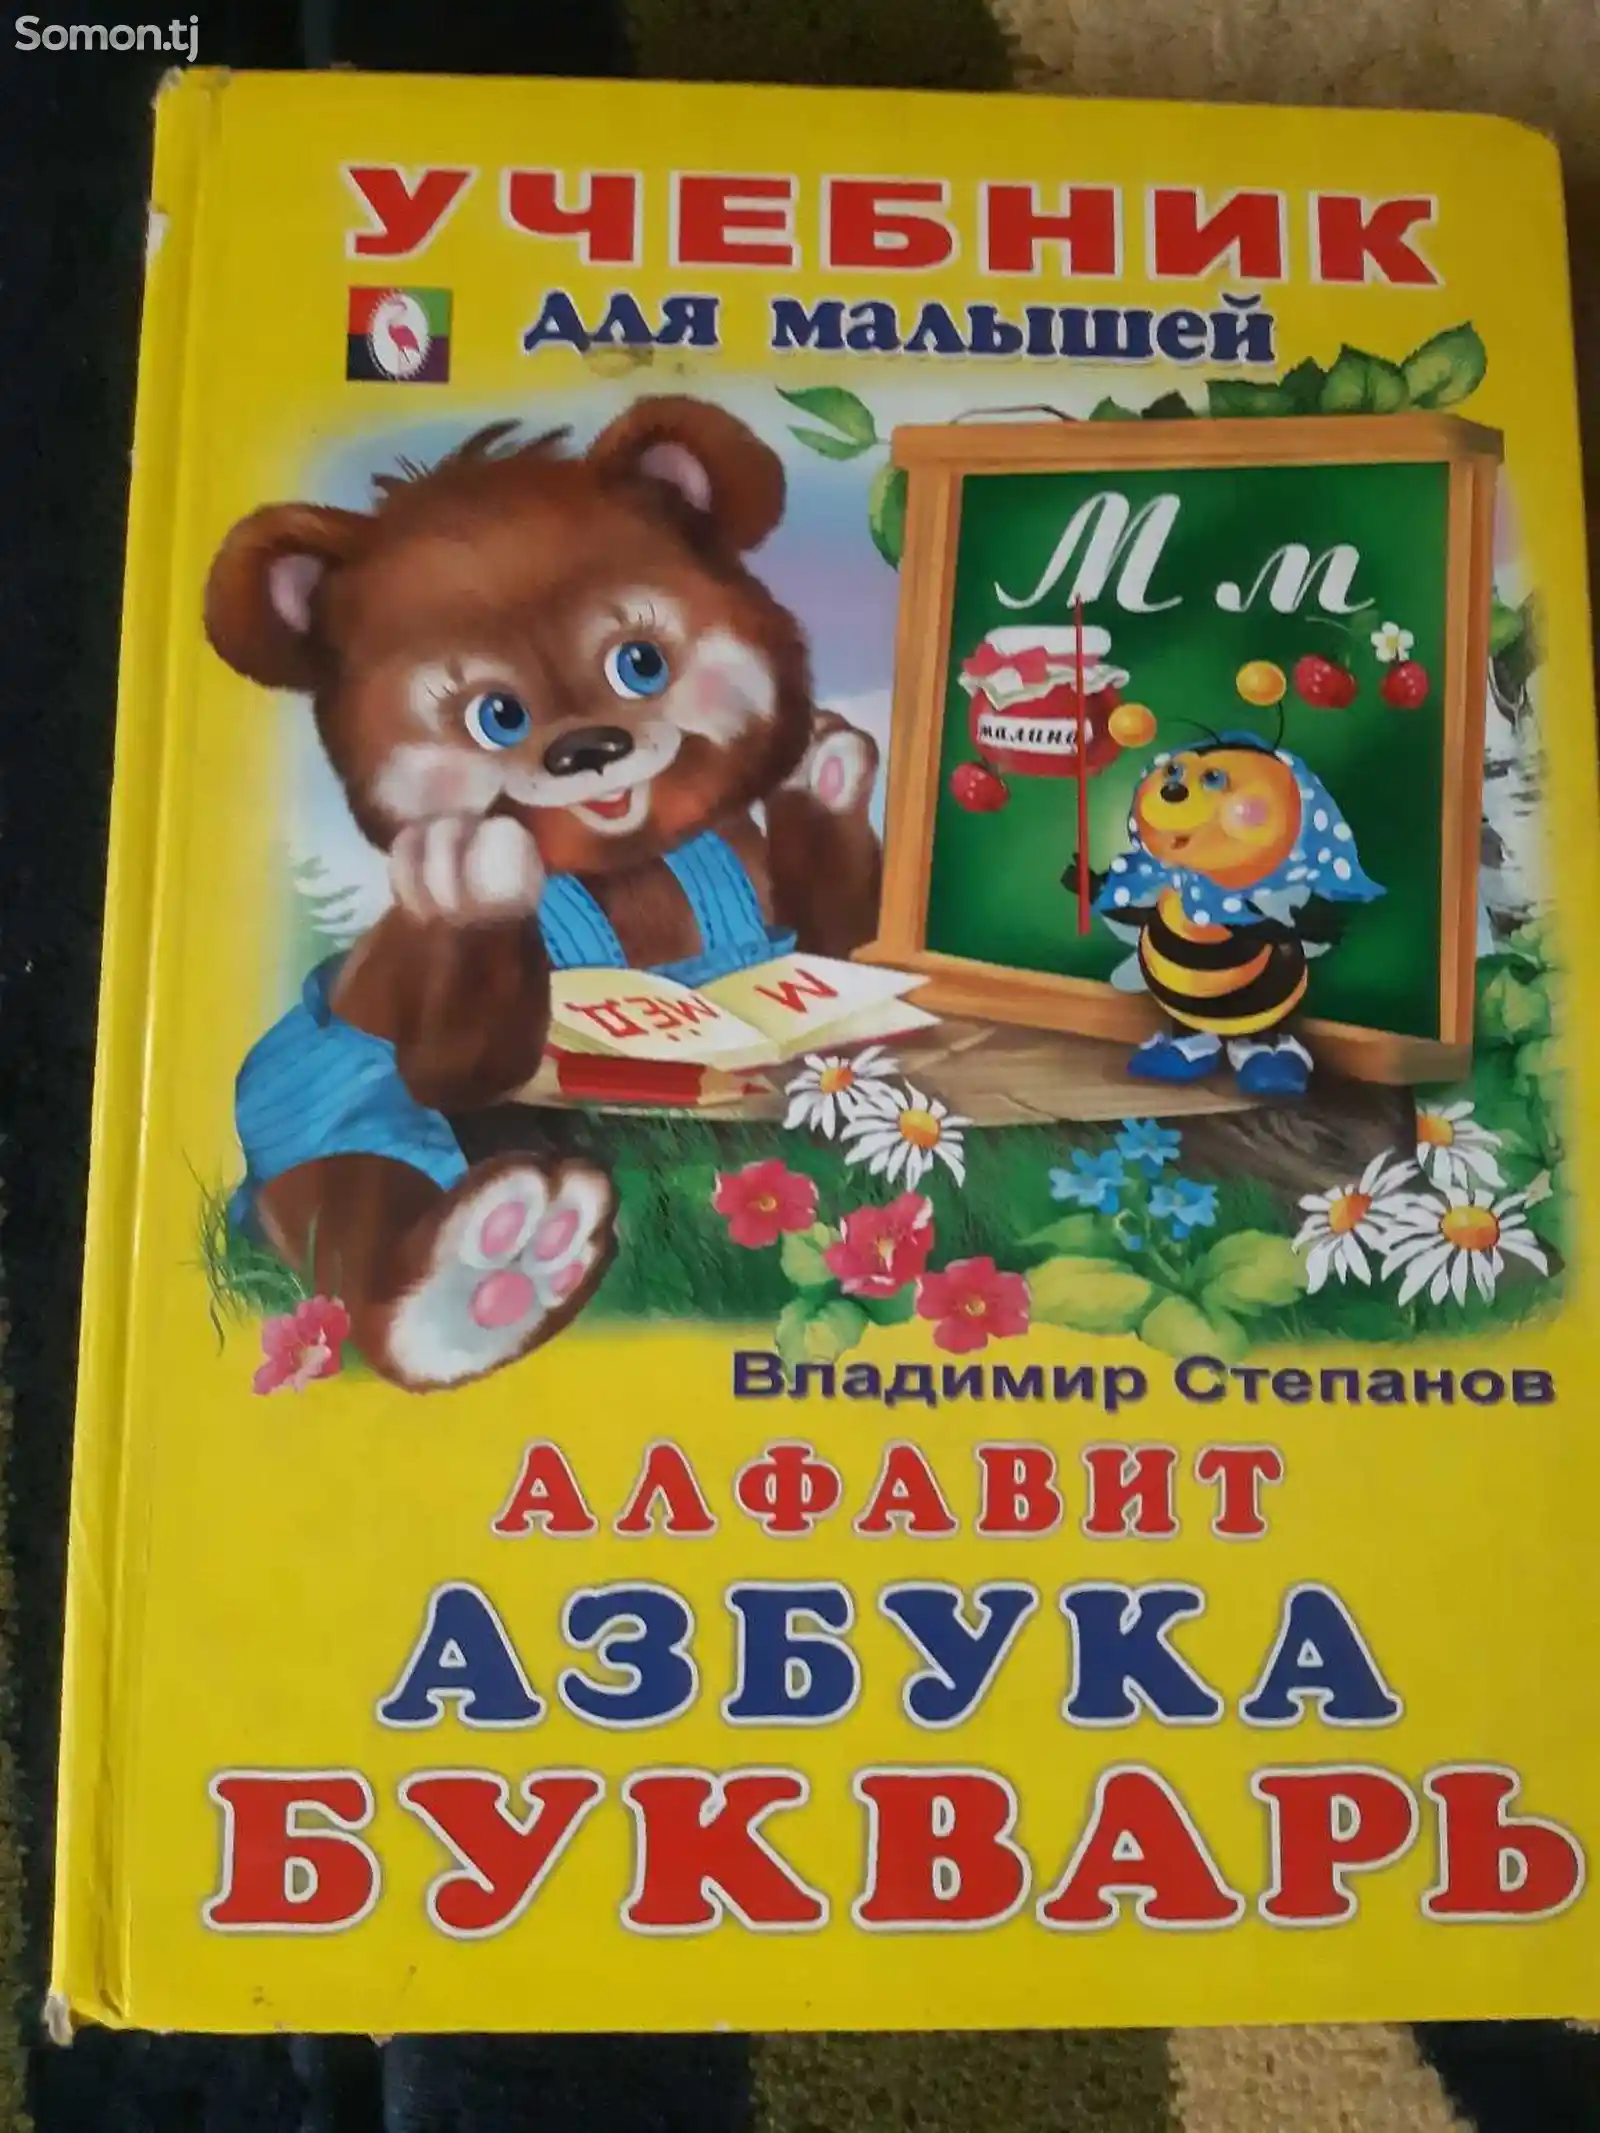 Учебник для малышей